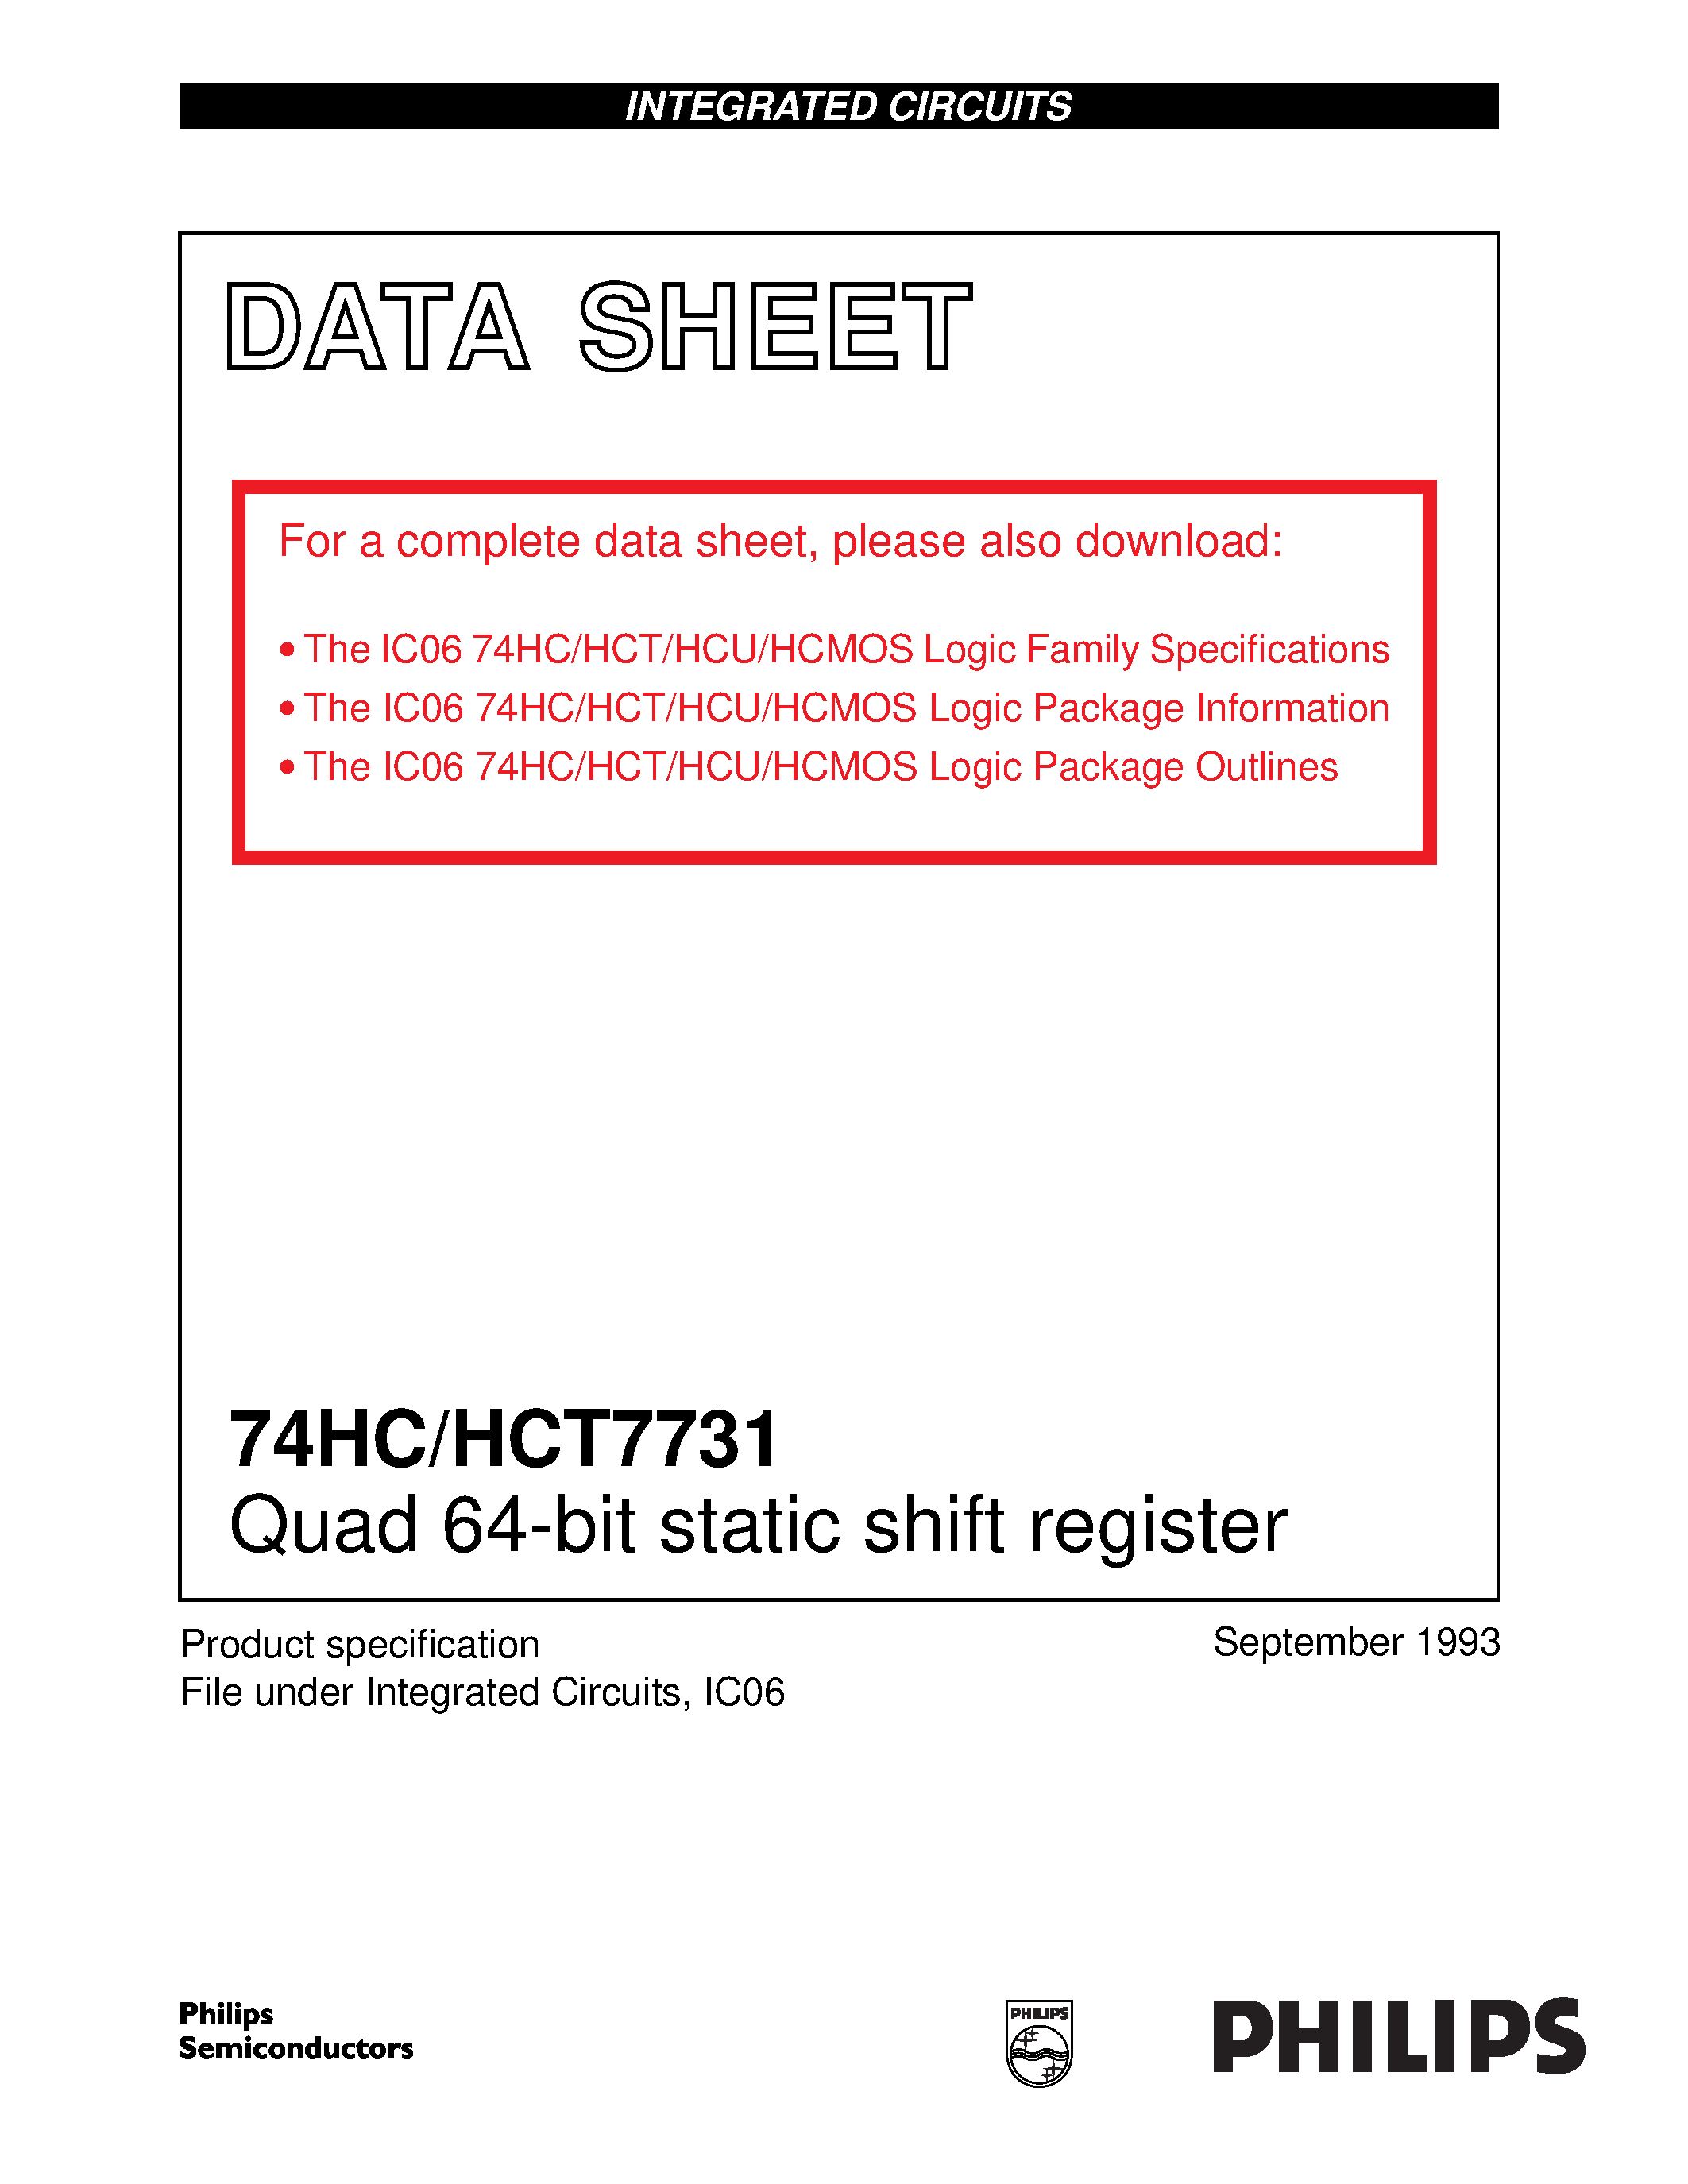 Даташит 74HCT7731D - Quad 64-bit static shift register страница 1